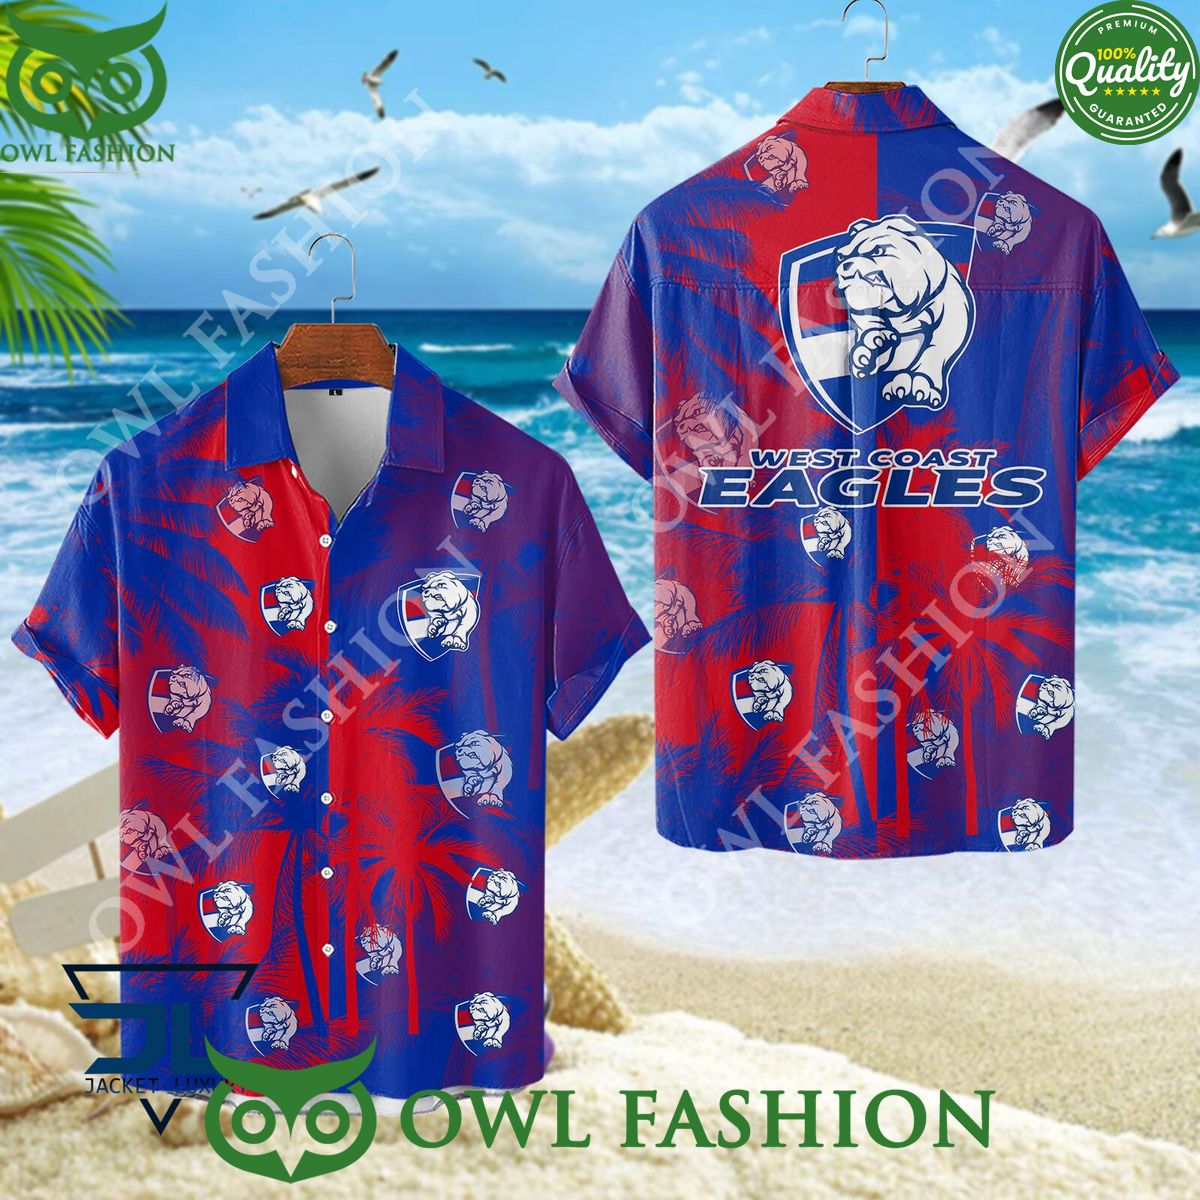 Western Bulldogs AFL Australian Hawaiian shirt and short